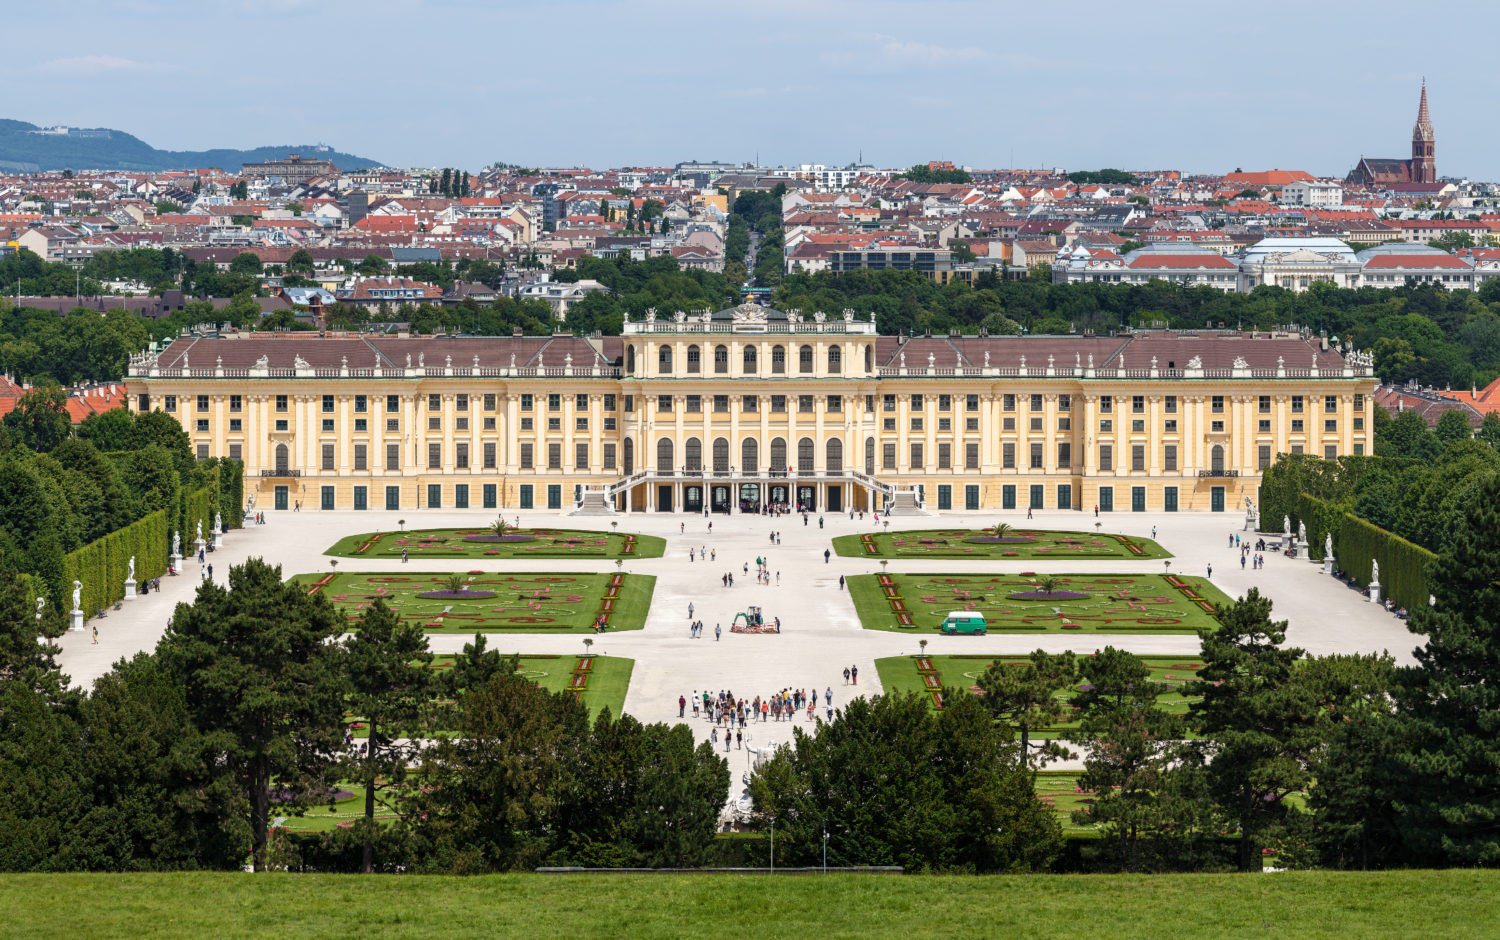 Vista do Palácio de Schonbrunn, atração turística e um dos hotéis em Viena